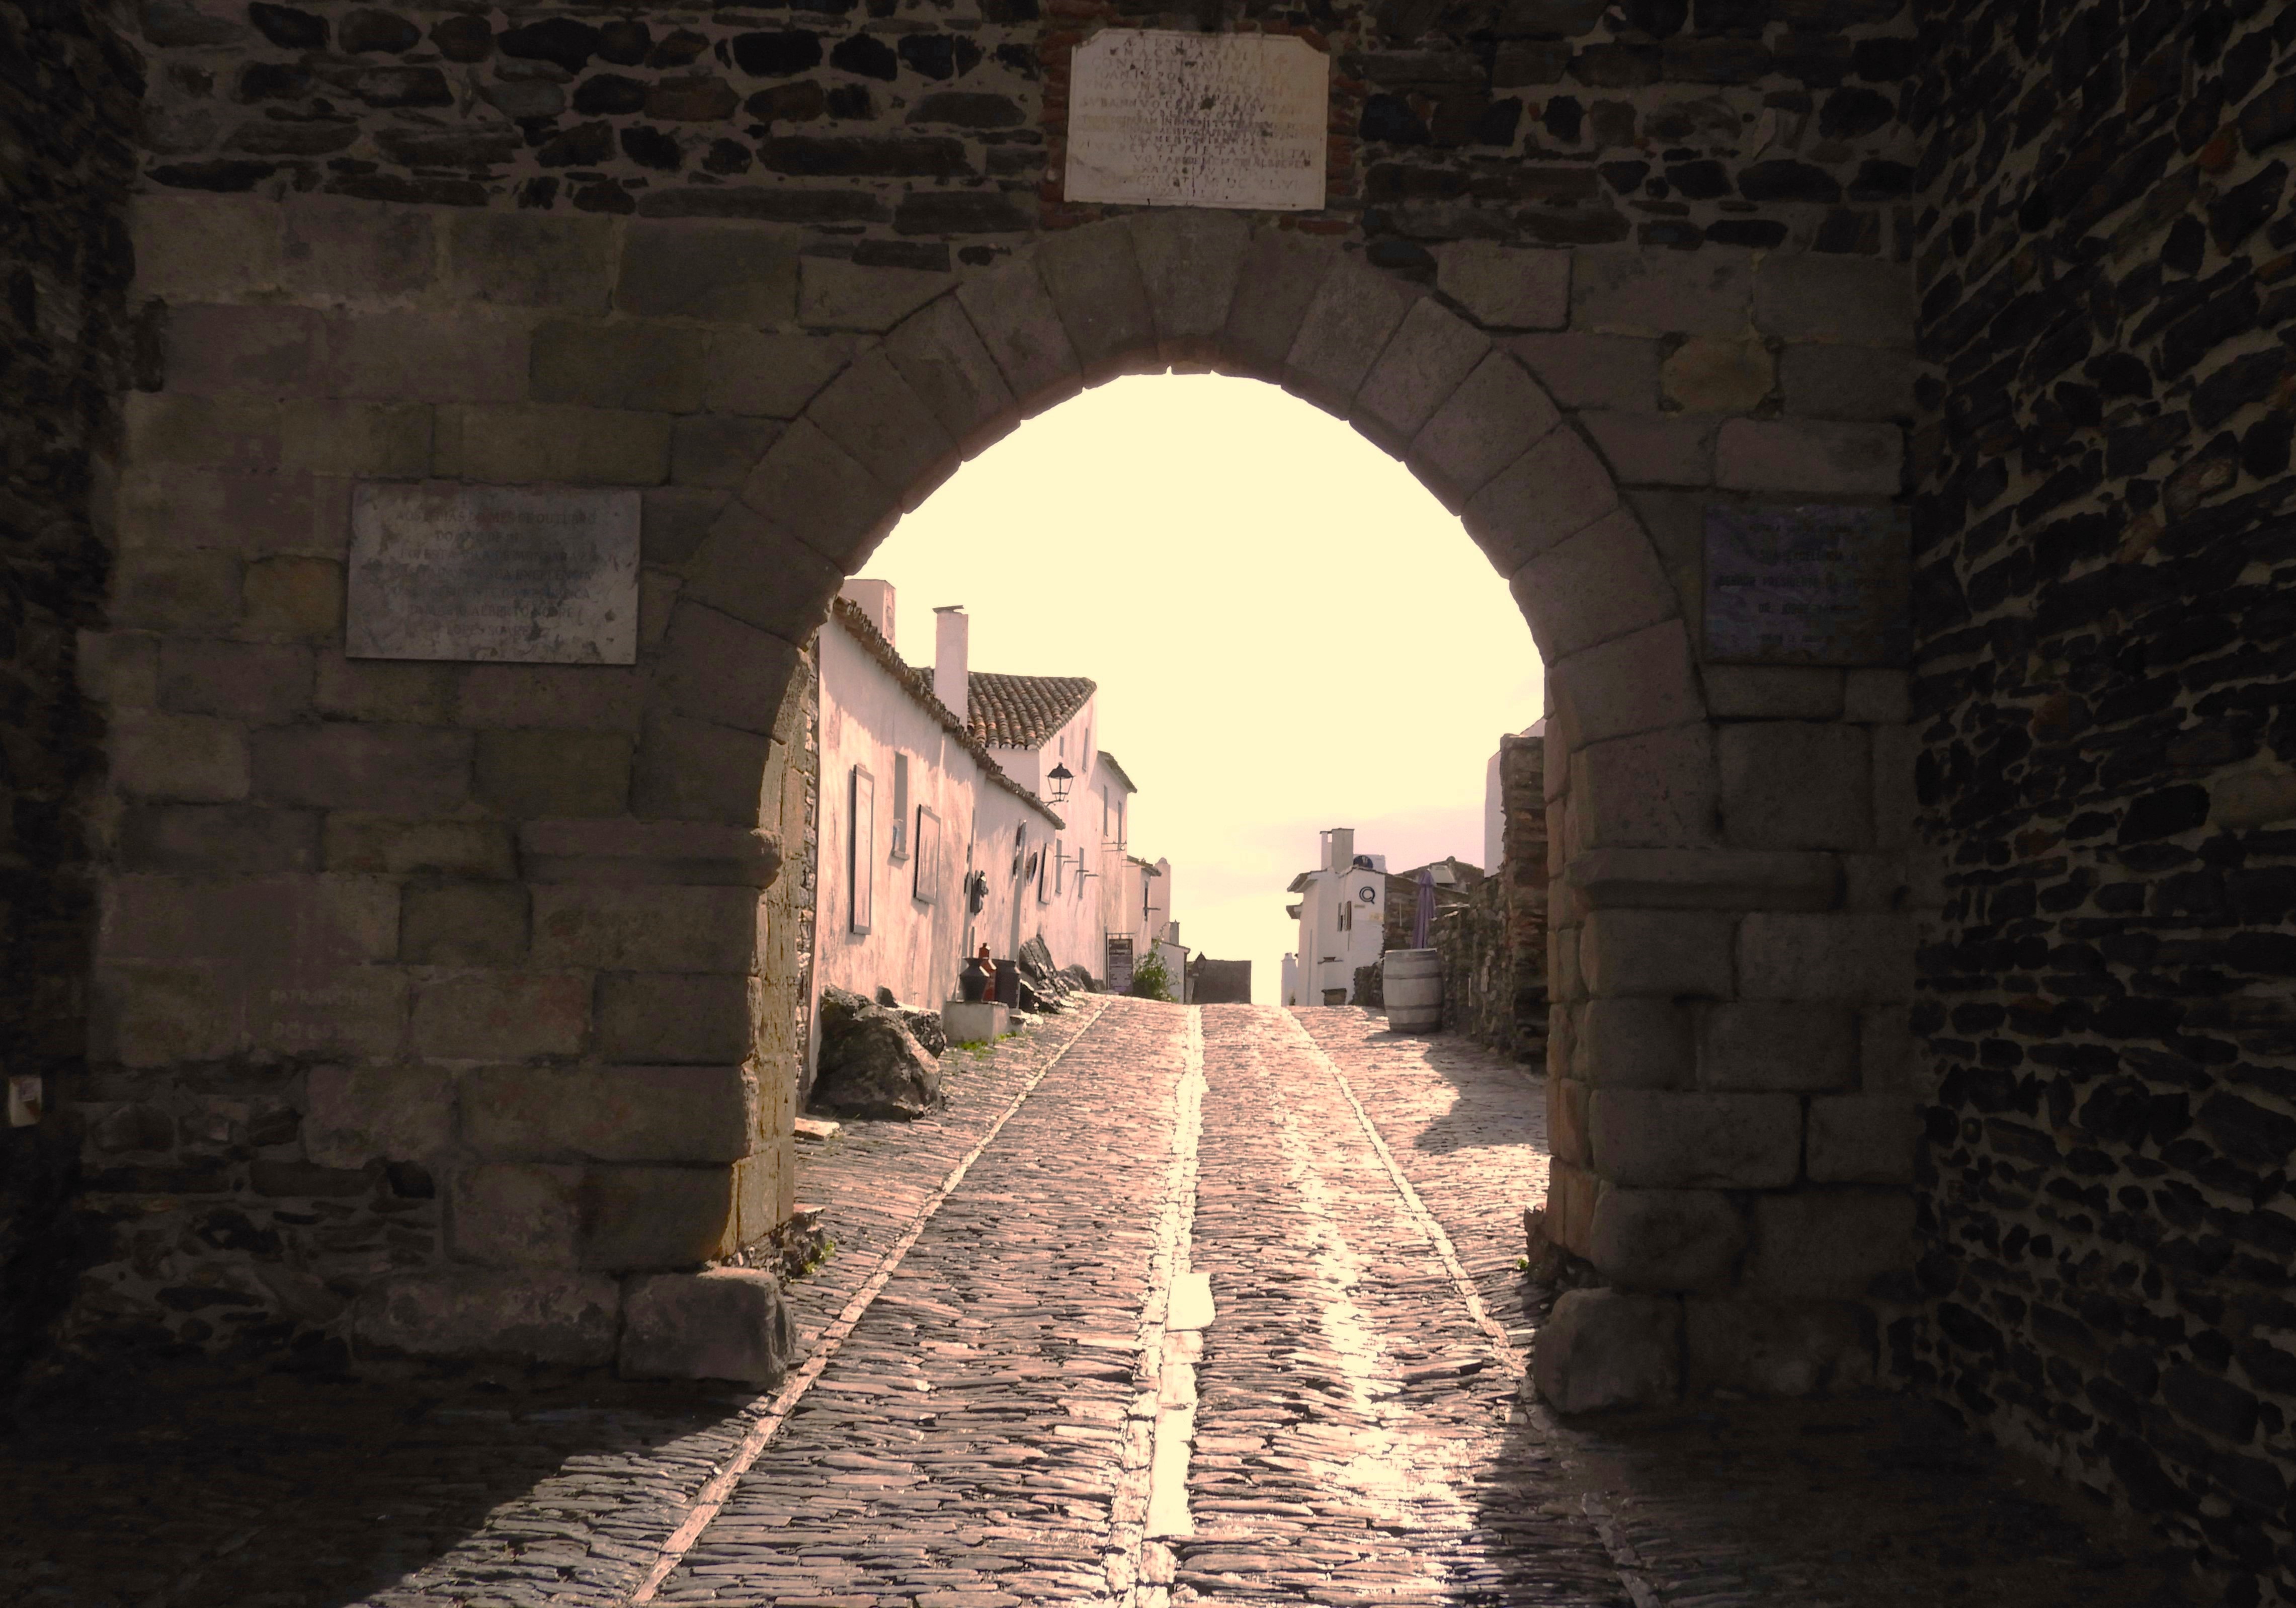 1176 - Porta di ingresso a Monsaraz nella regione dell'Alentejo - Portogallo